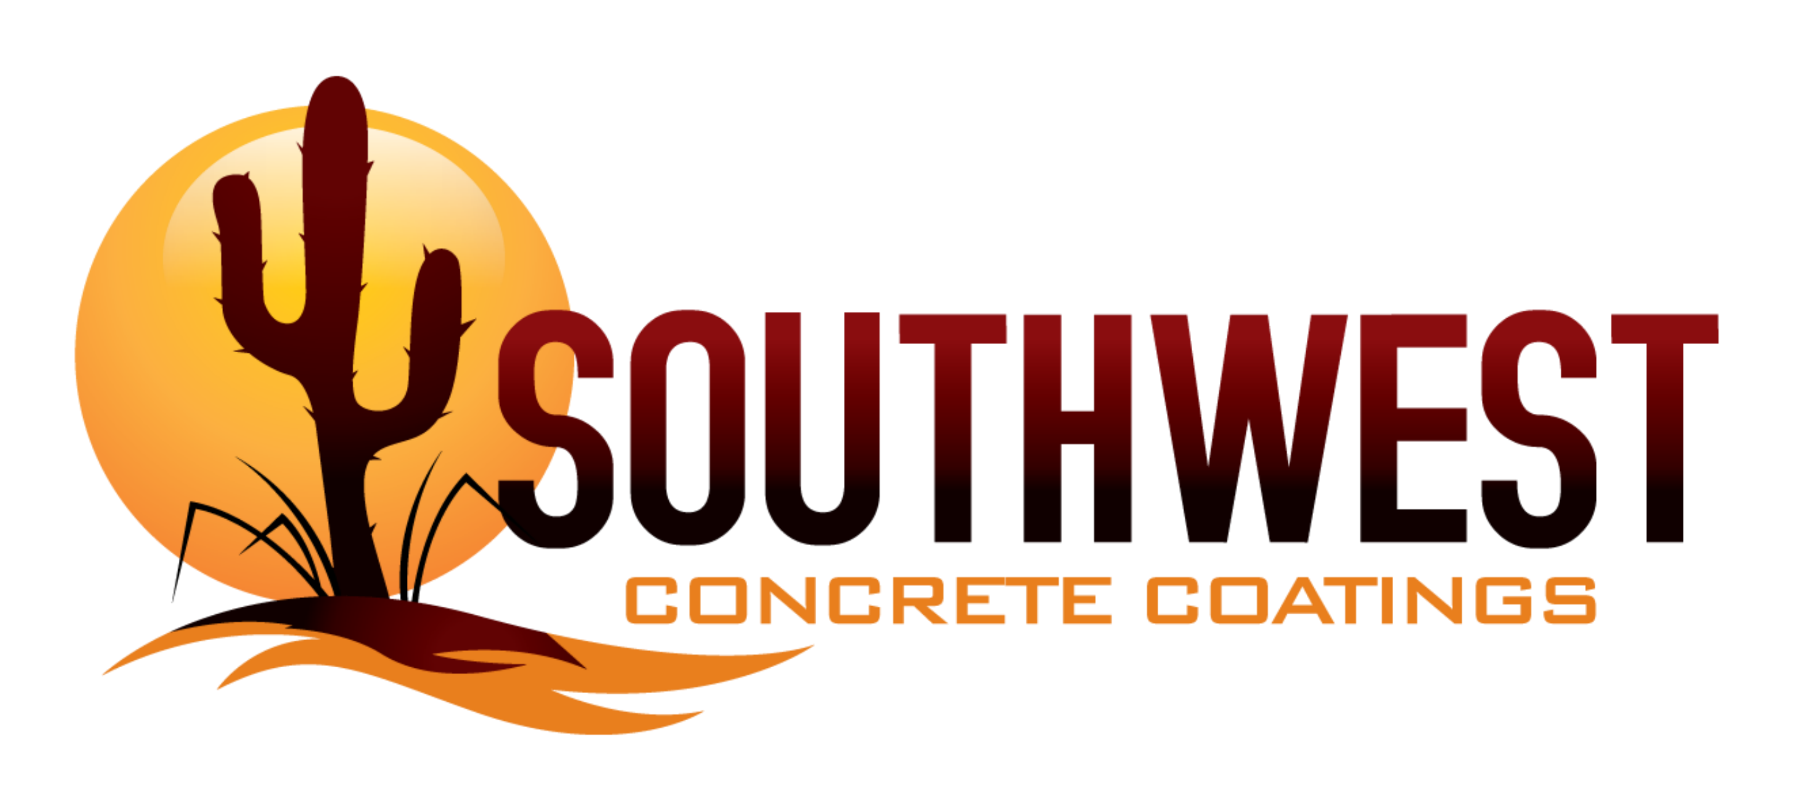 SouthWest-Concrete-Coatings_P1A_FINAL 3